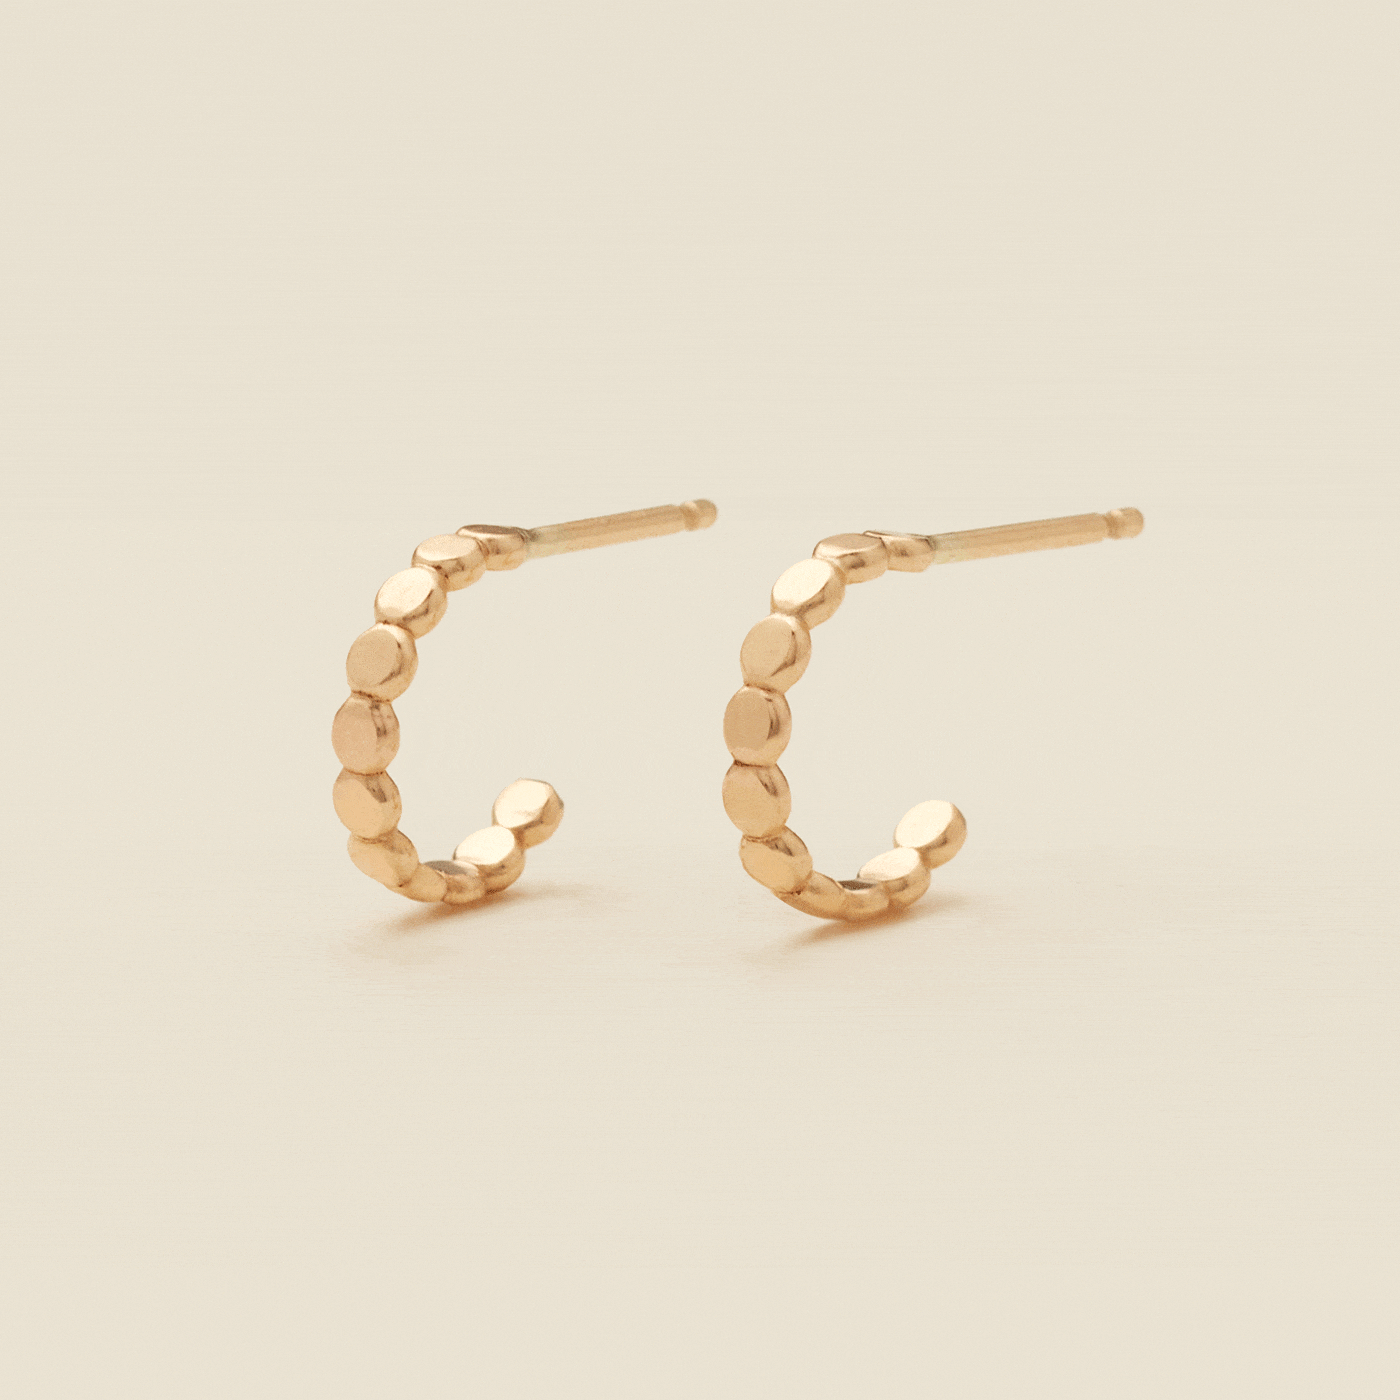 Poppy Hoop Earrings Gold Filled / 10mm Earring